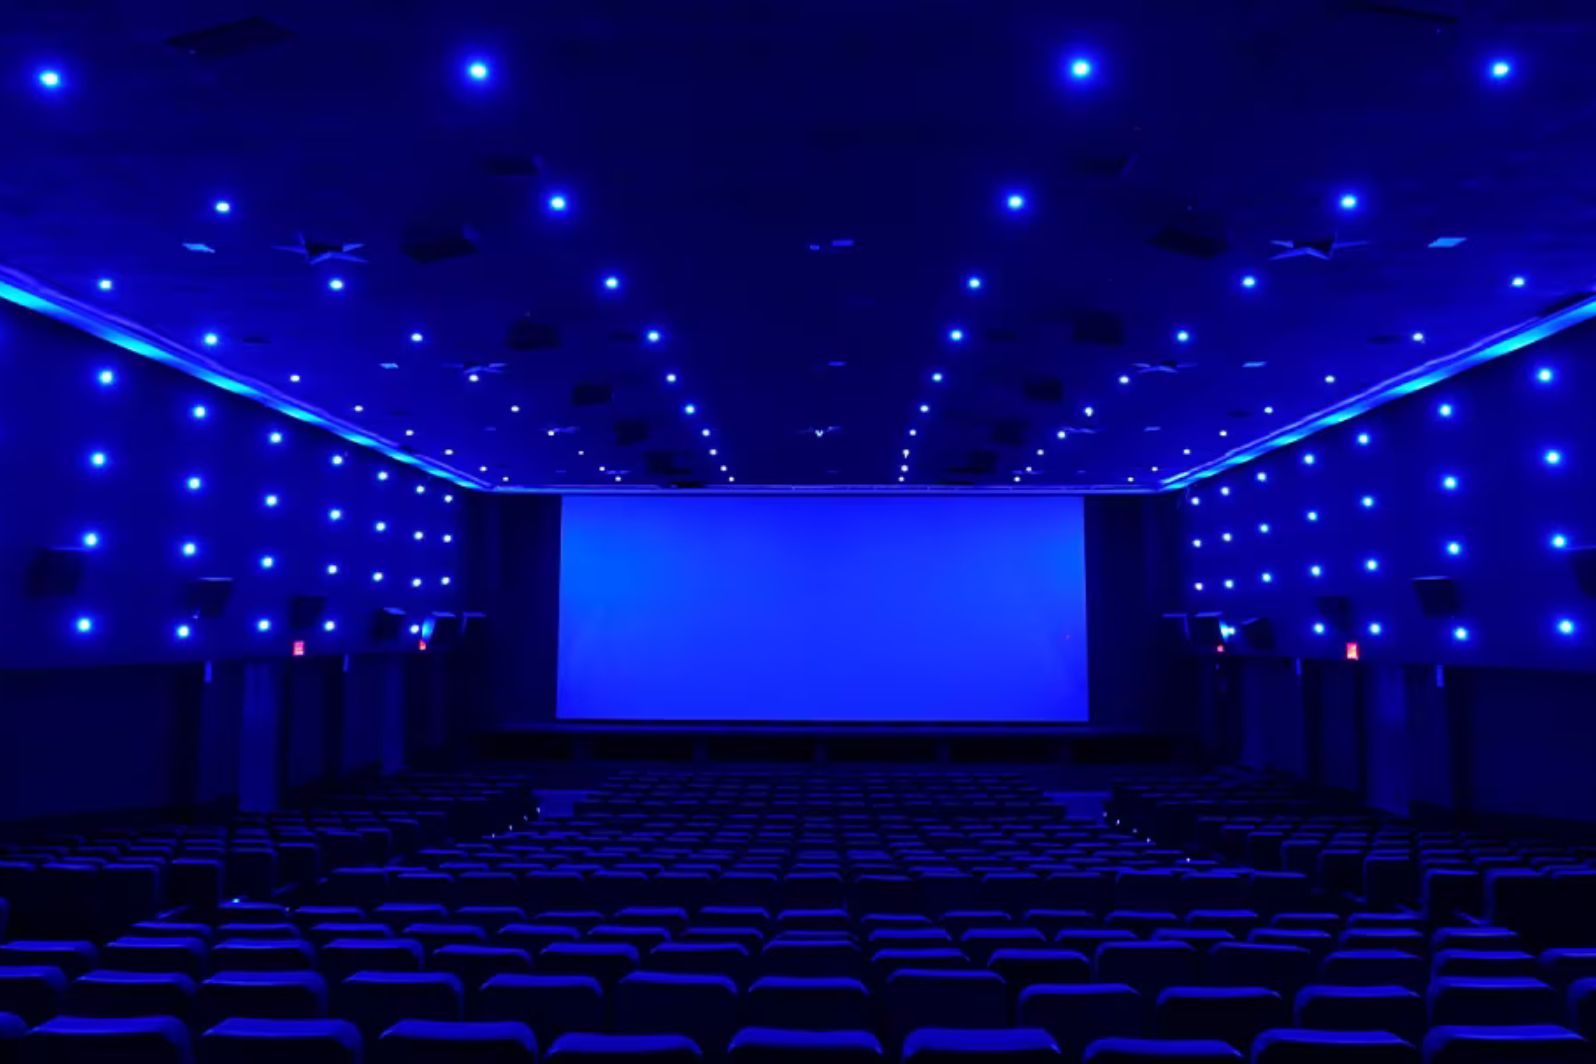 c3 cinema laurel mall tamil nadu